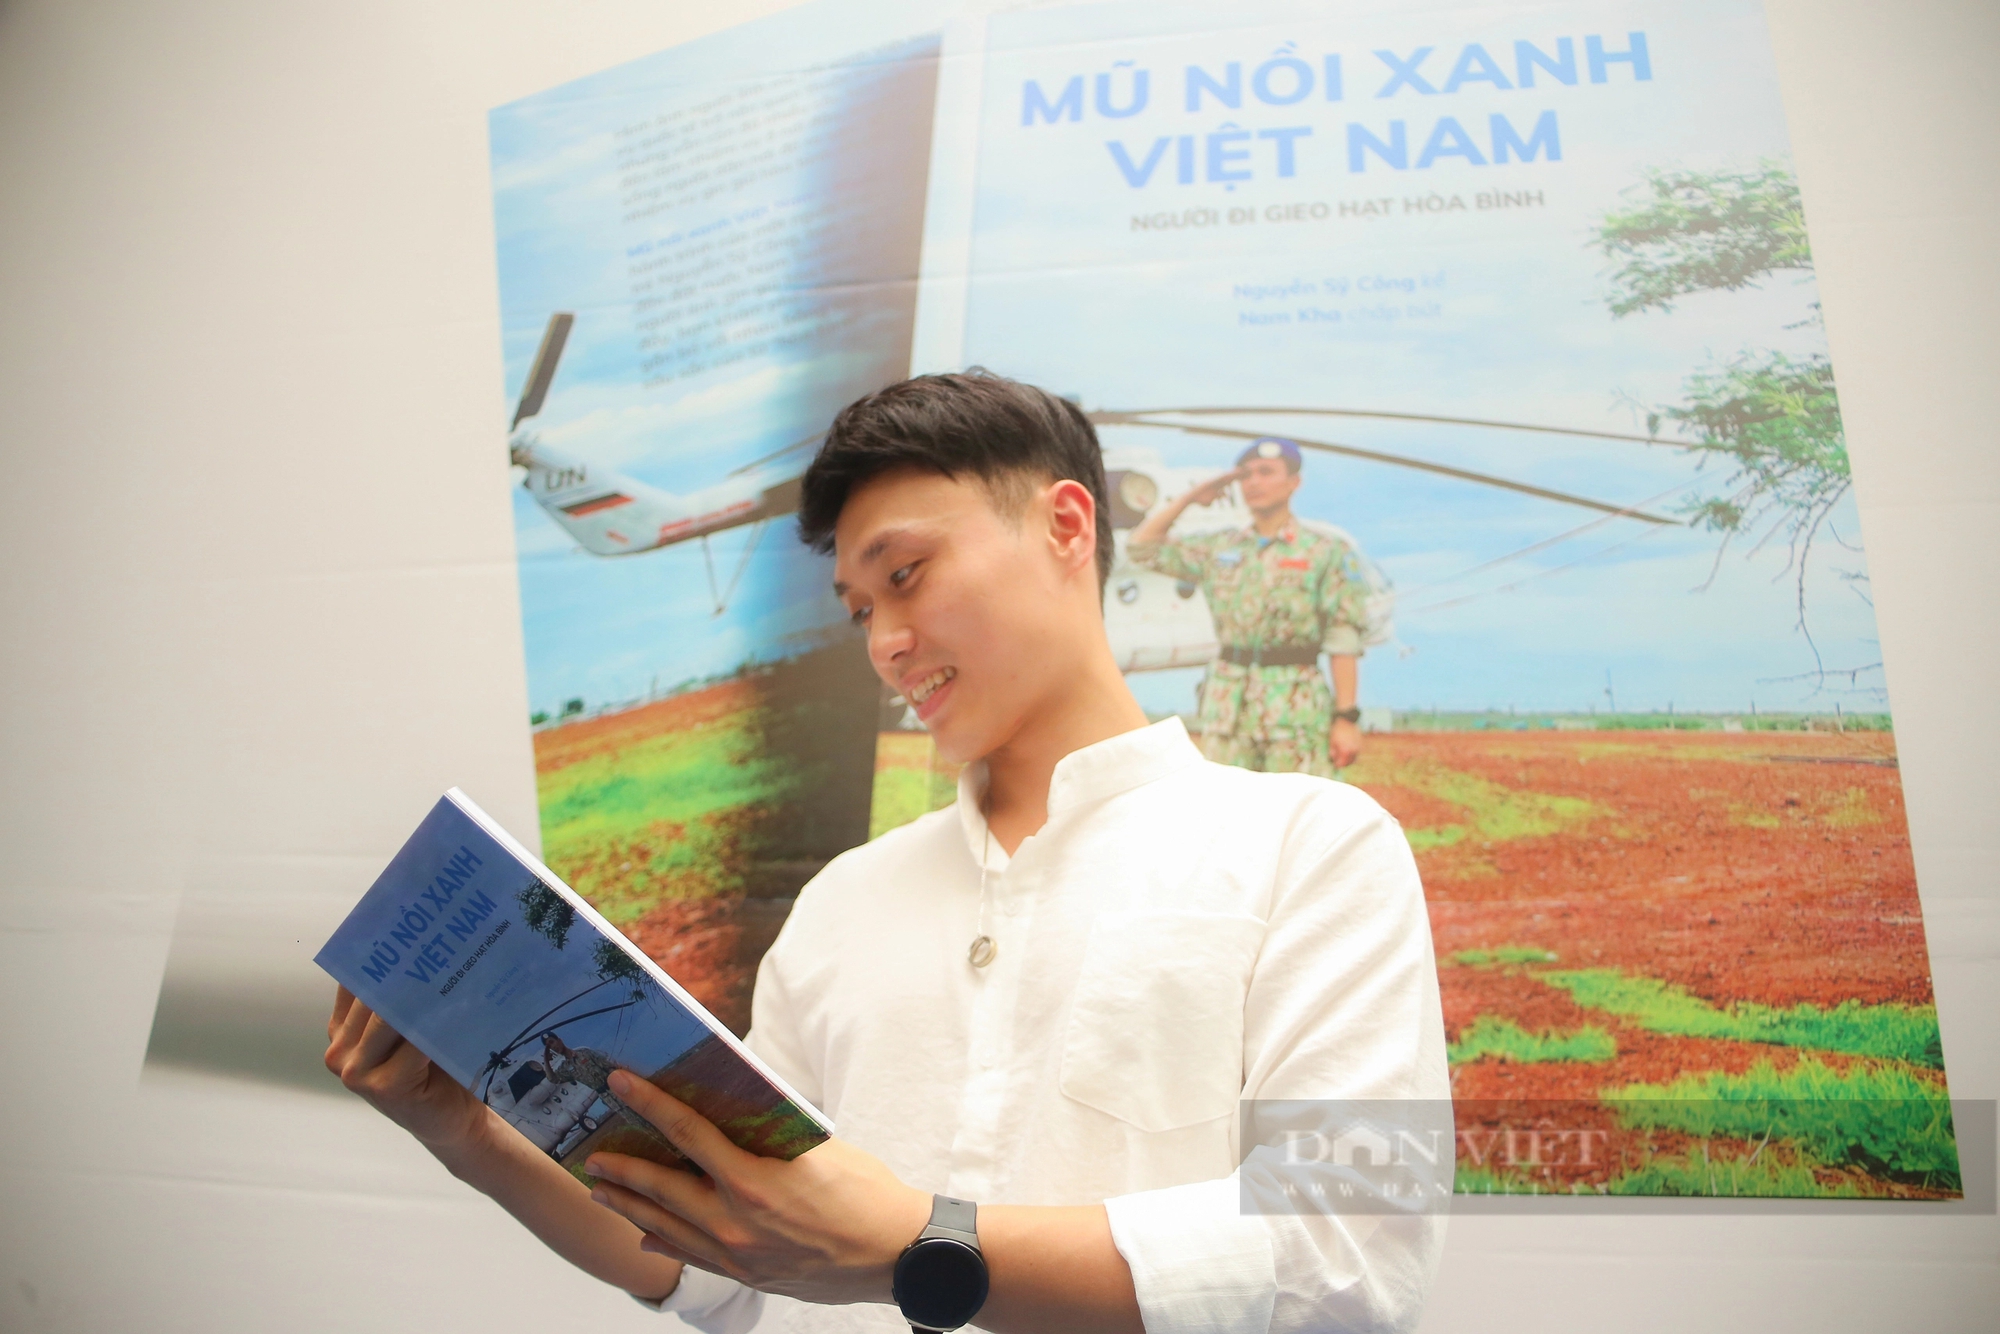 "Mũ nồi xanh Việt Nam - Người đi gieo hạt hòa bình": Truyền cảm hứng về hoà bình và hy vọng- Ảnh 2.